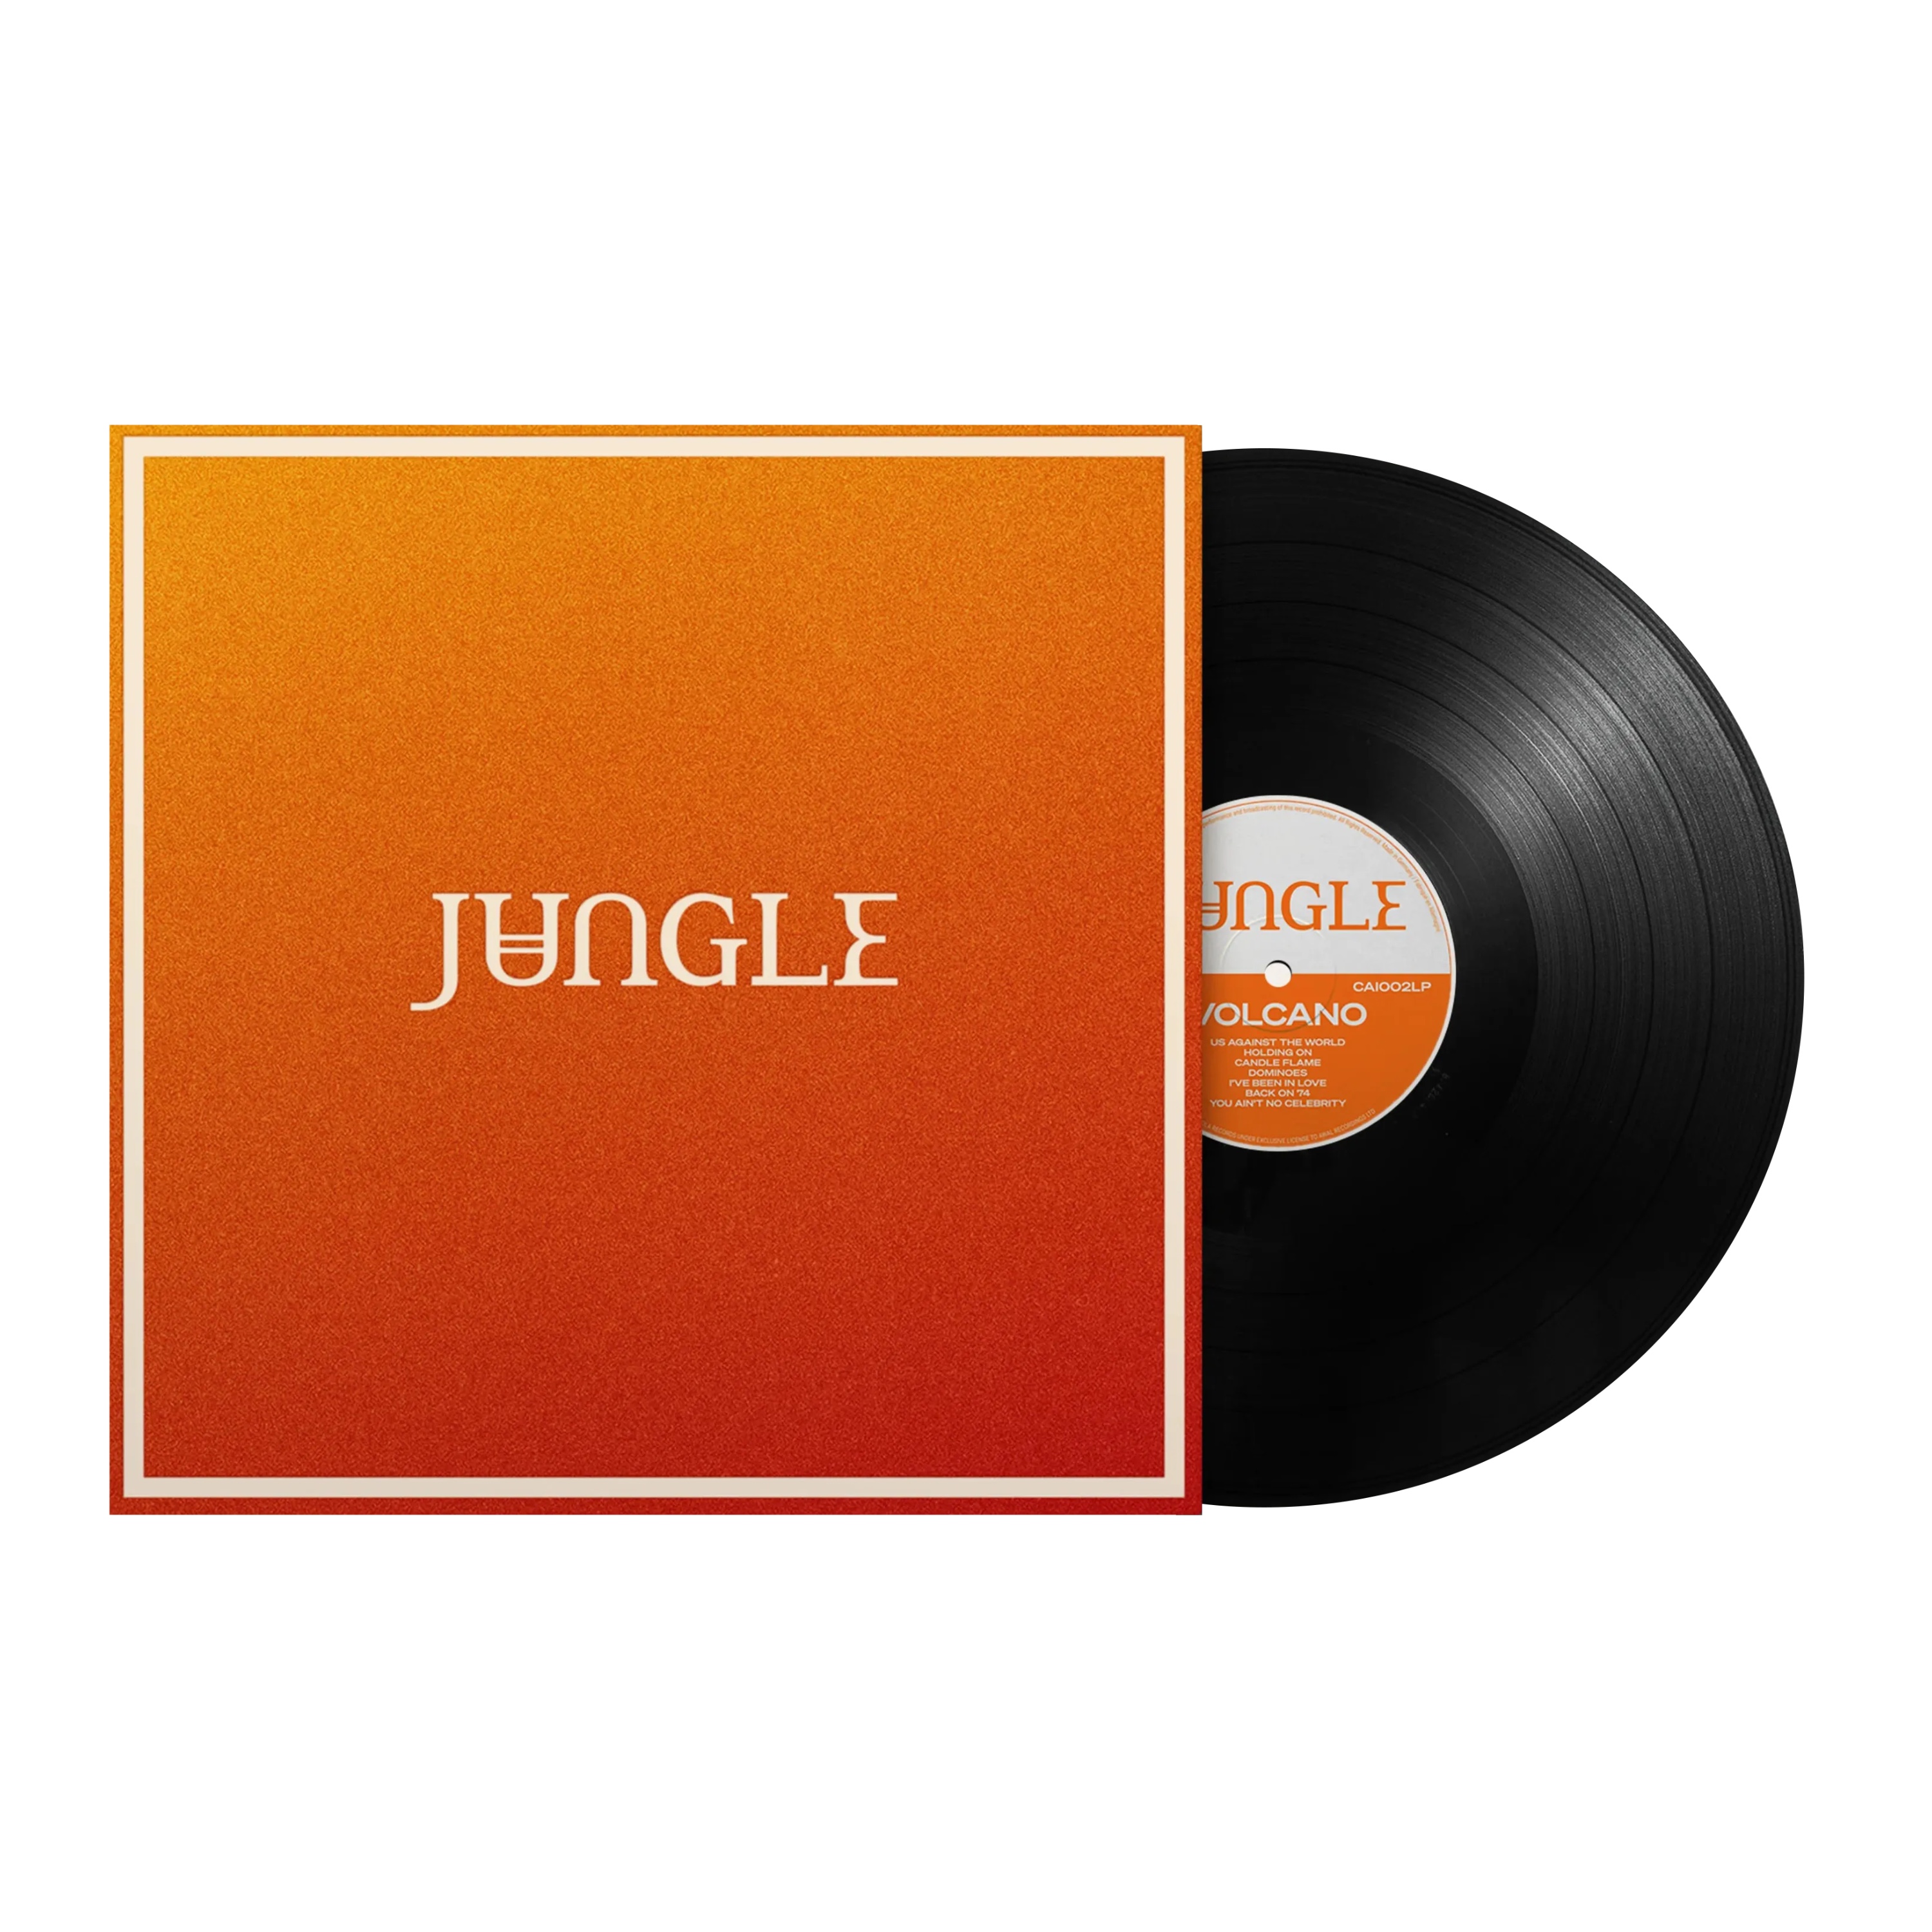 예약판매[PRE-ORDER] Jungle (정글) - Volcano [LP] [게이트폴드]